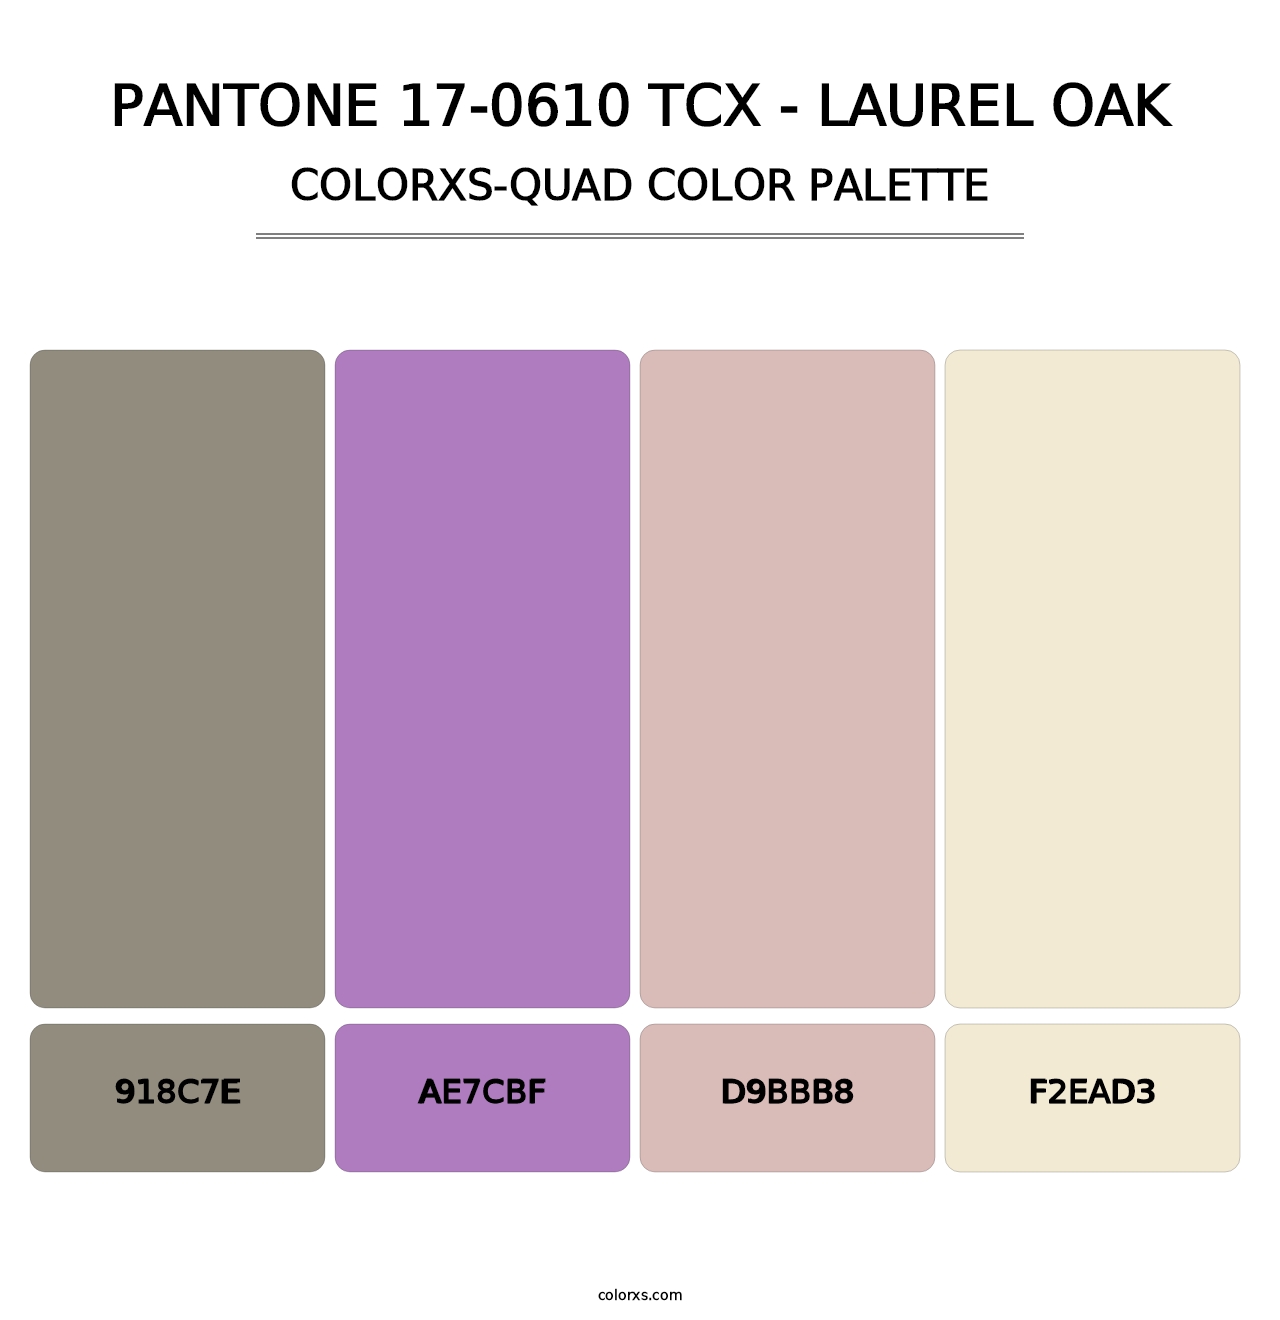 PANTONE 17-0610 TCX - Laurel Oak - Colorxs Quad Palette